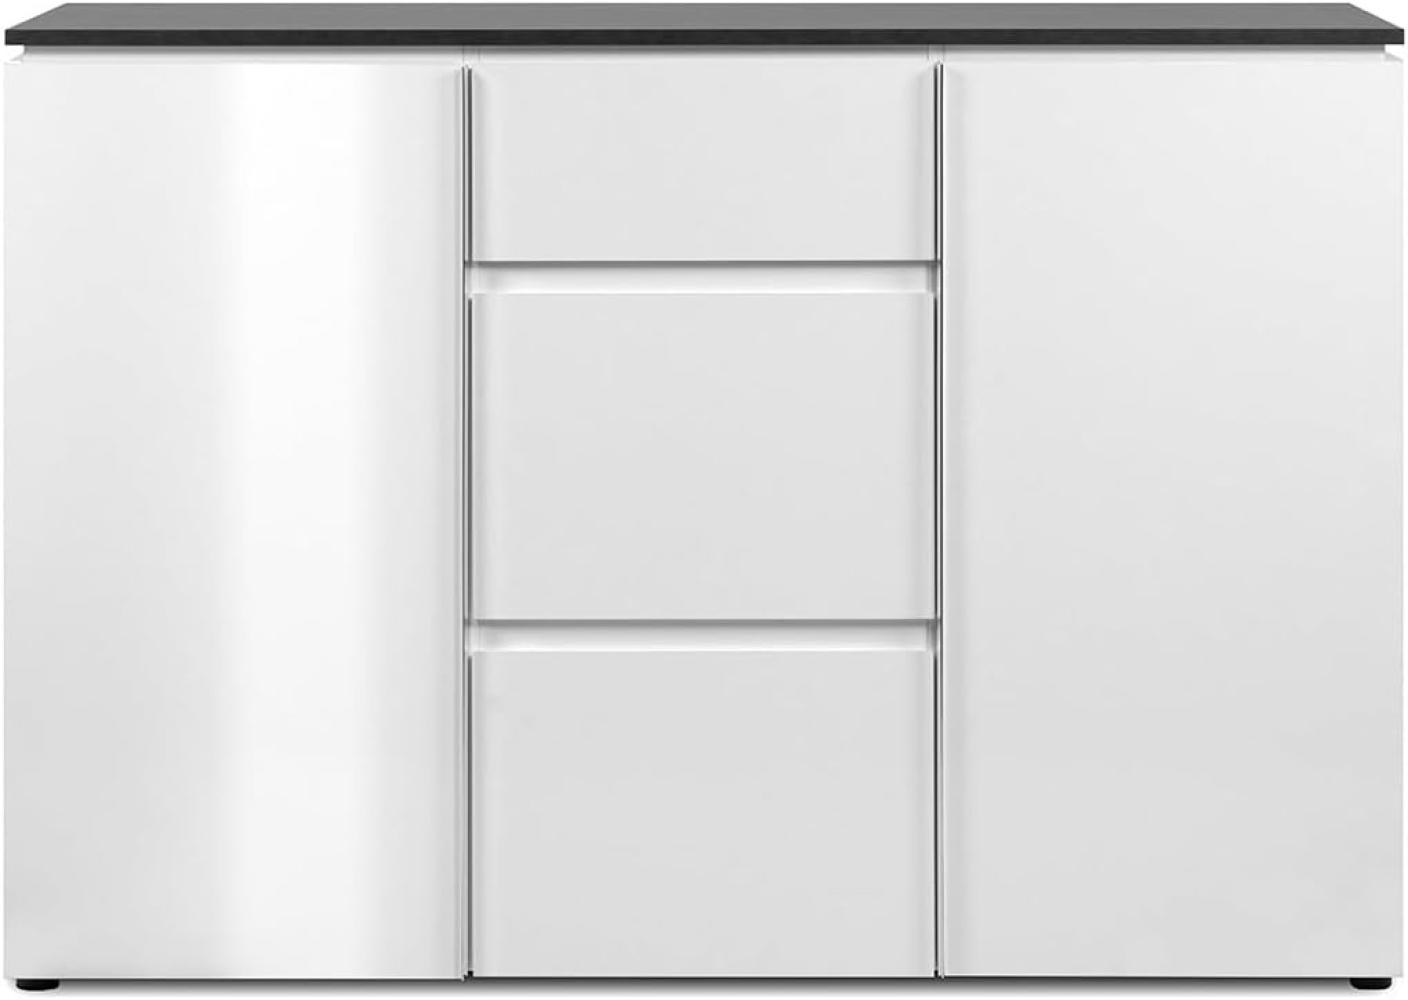 Sideboard Brest in weiß Glanz und Matera grau 133 cm Bild 1